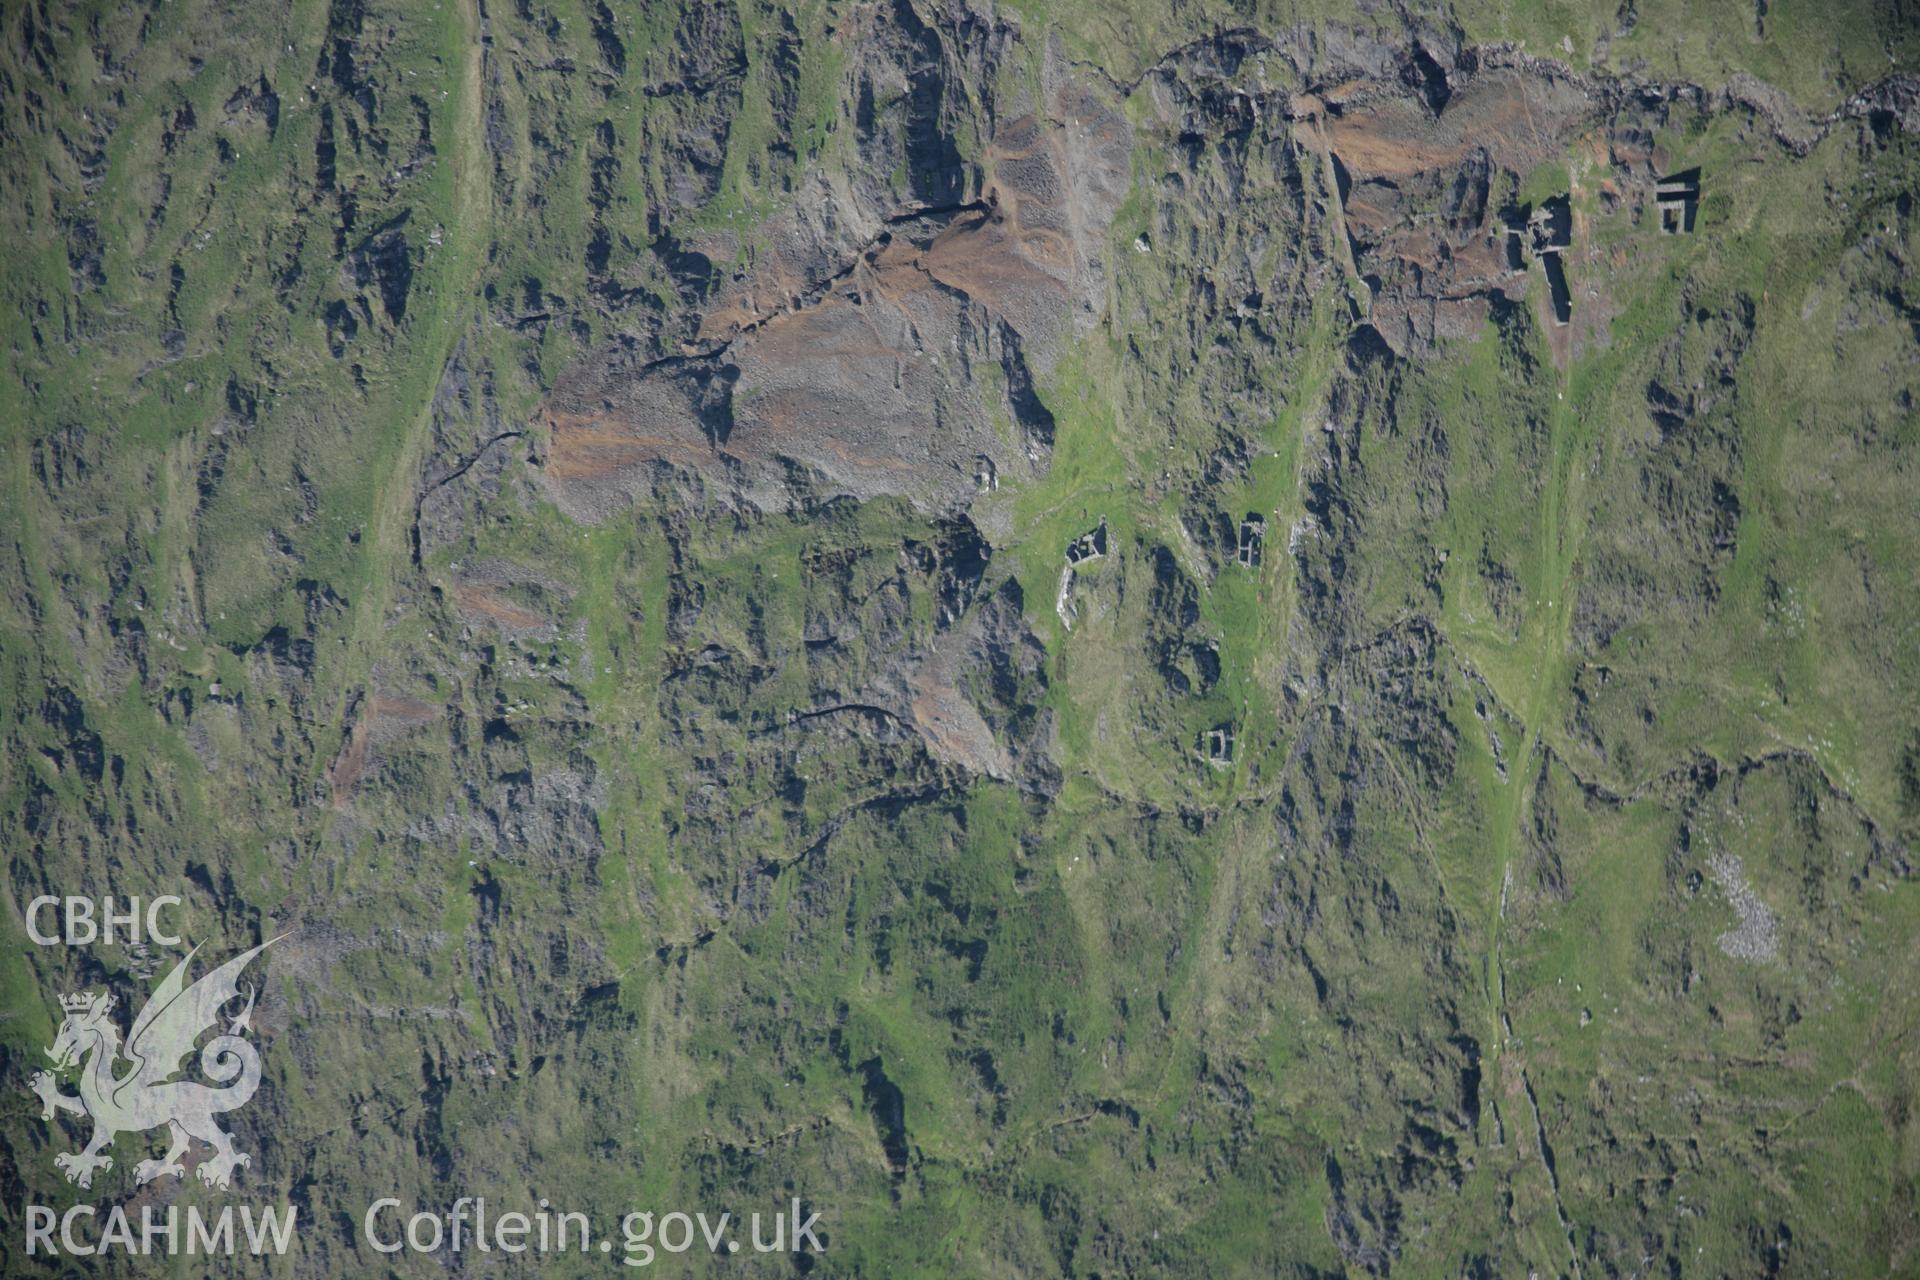 RCAHMW digital colour oblique photograph of Cwm Erch Copper Mine. Taken on 08/06/2005 by T.G. Driver.